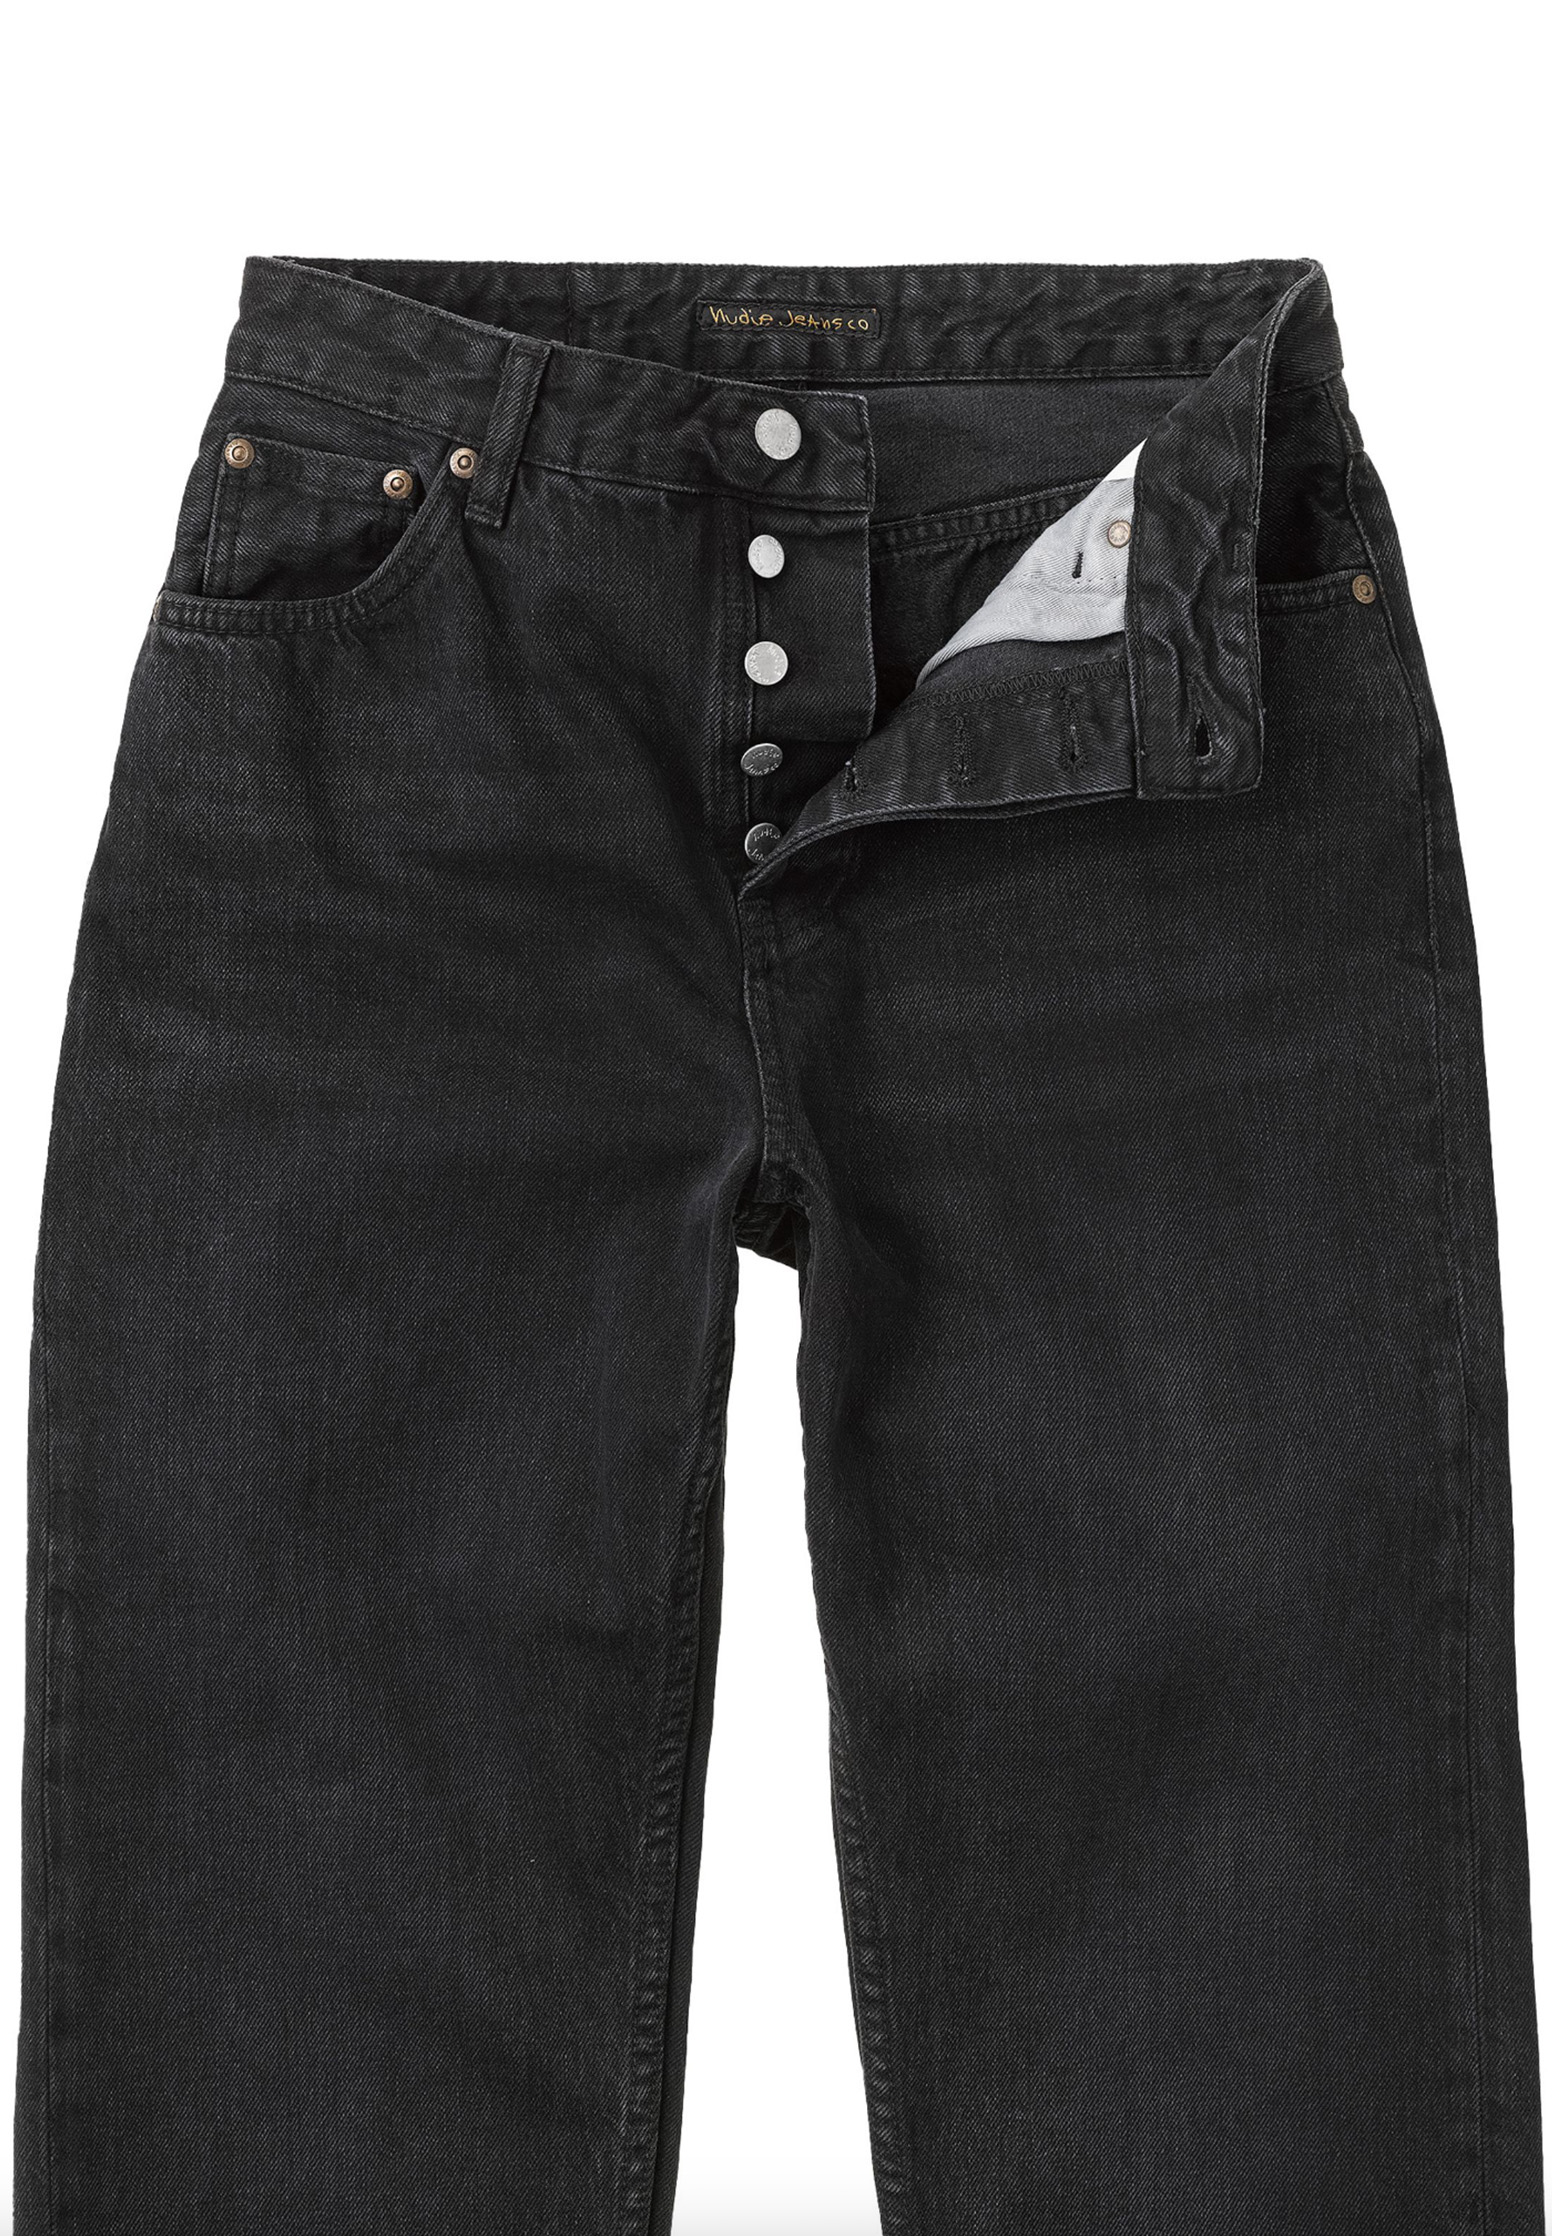 NUDIE JEANS Jeans Lofty Lo vintage black 36/30